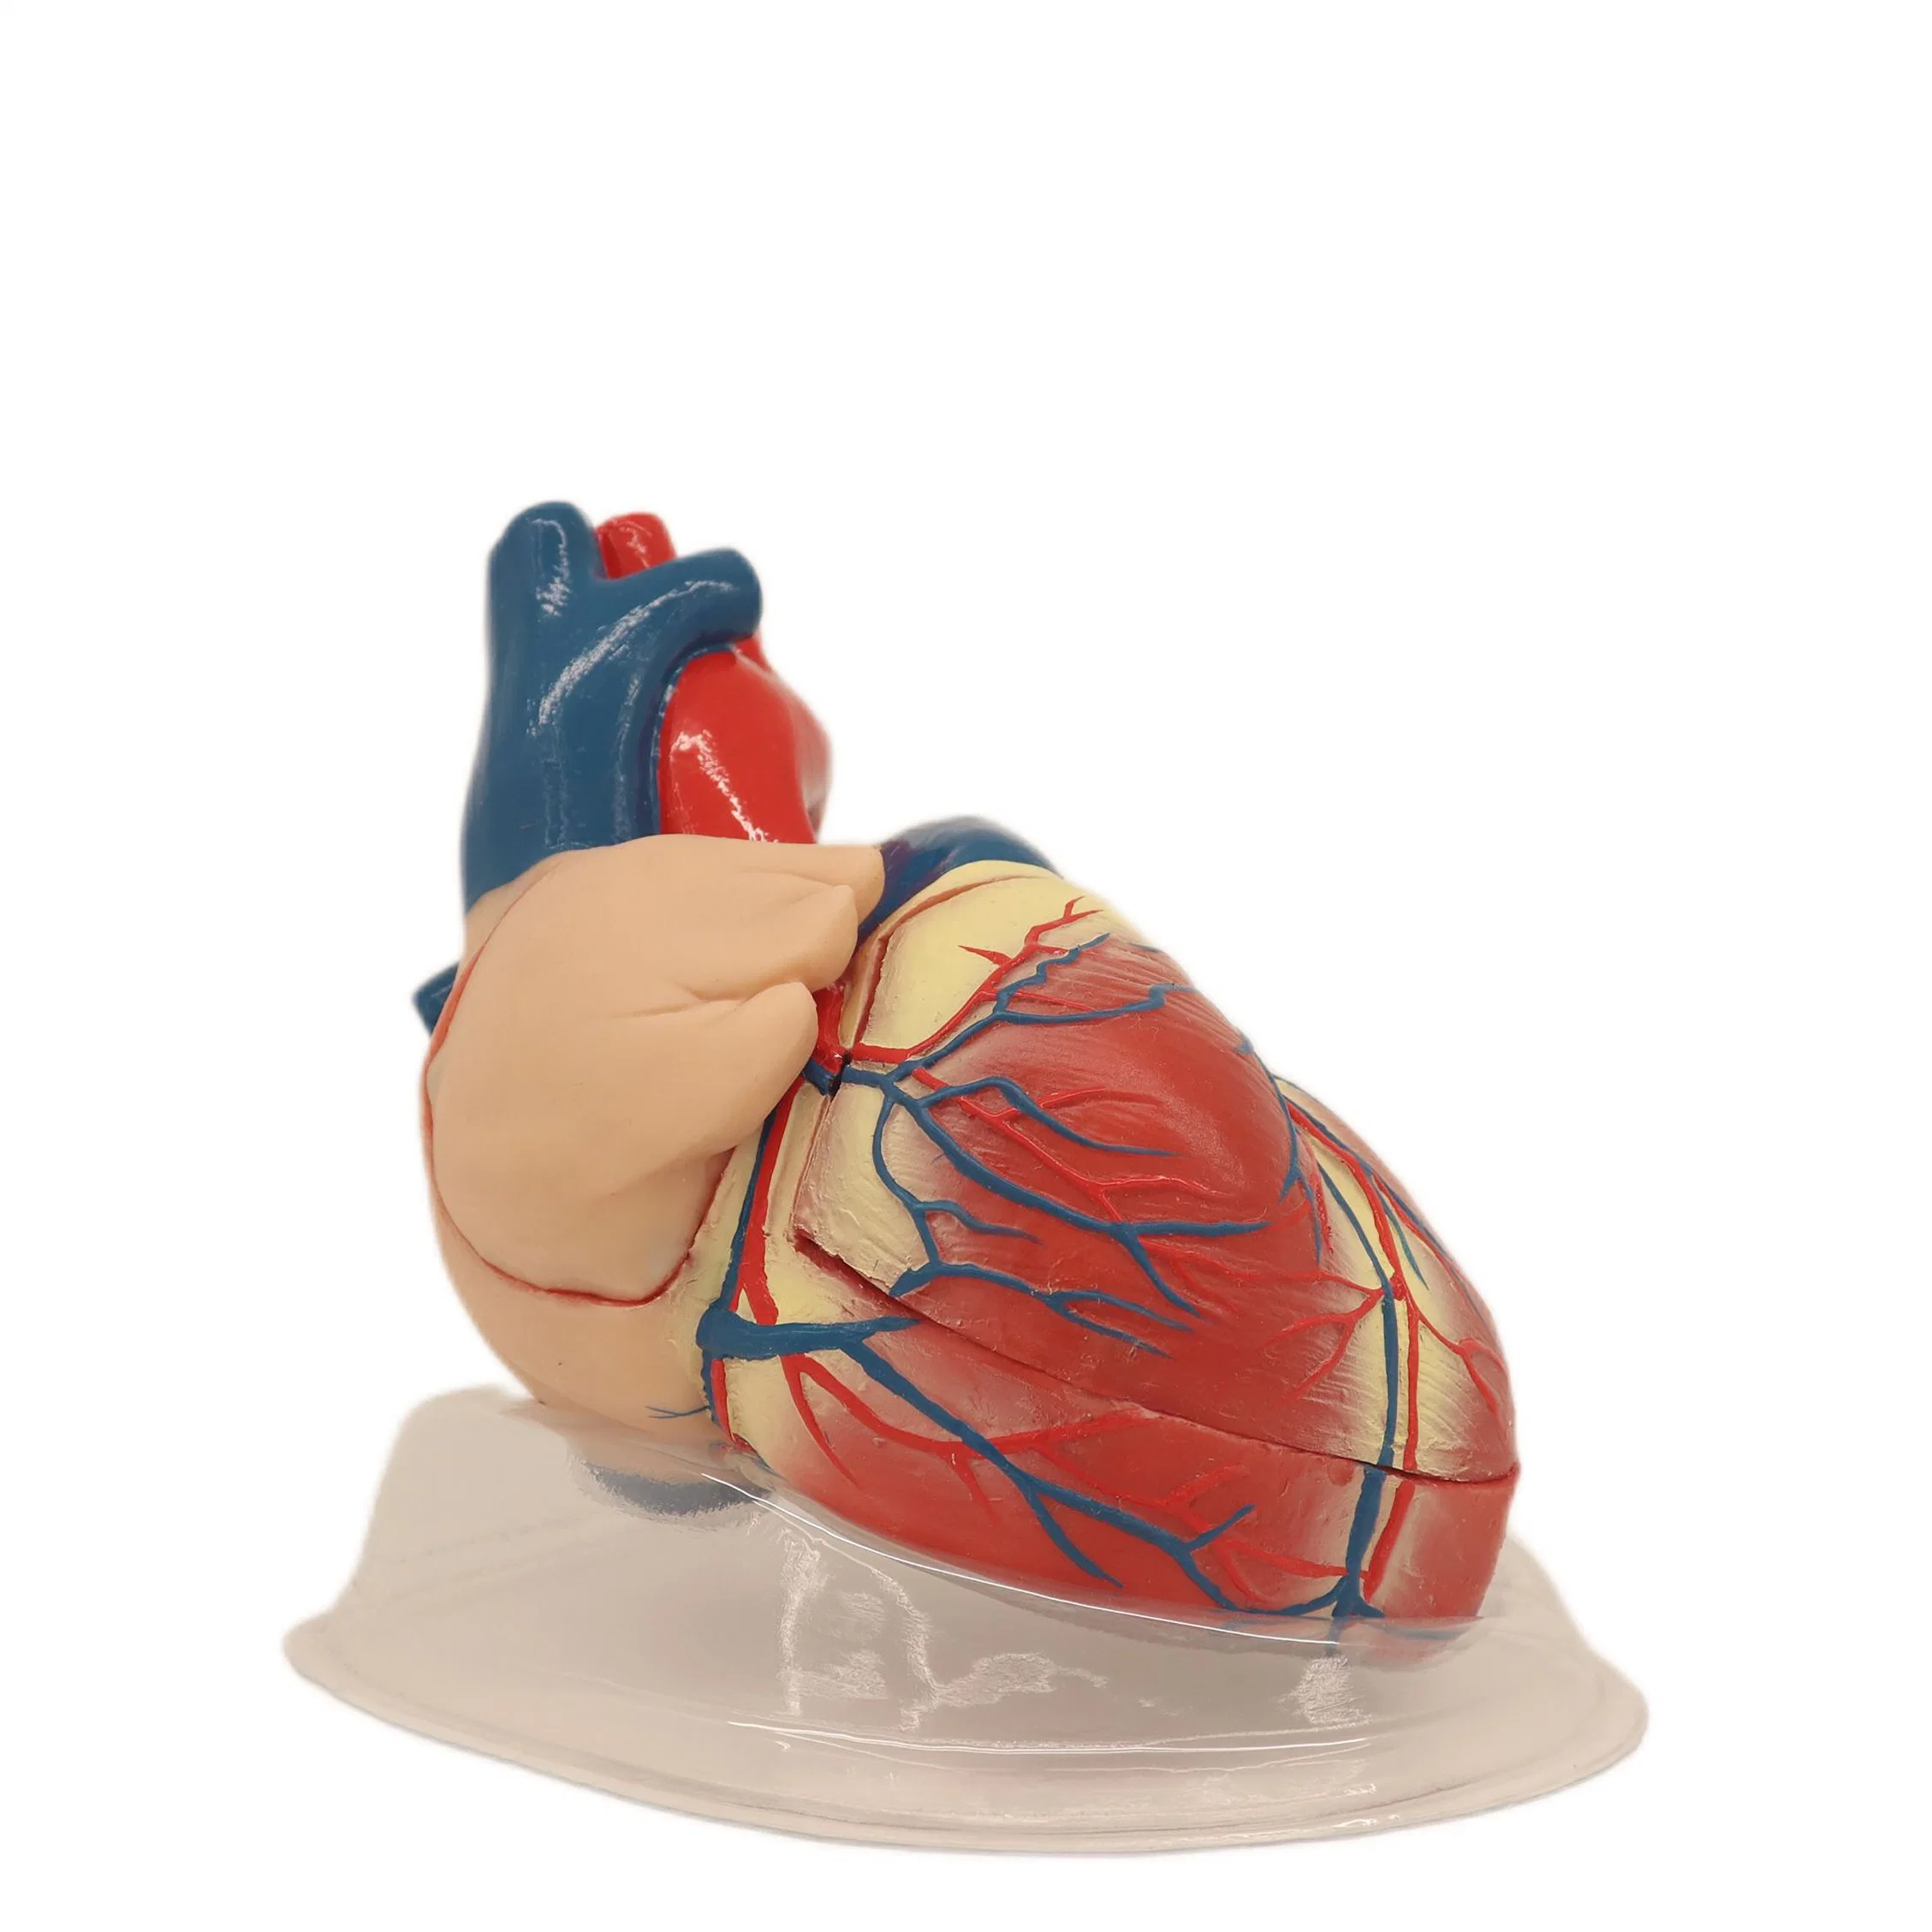 Modelo anatómico de Humam PVC de soporte fuerte Modelo de disección cardíaca